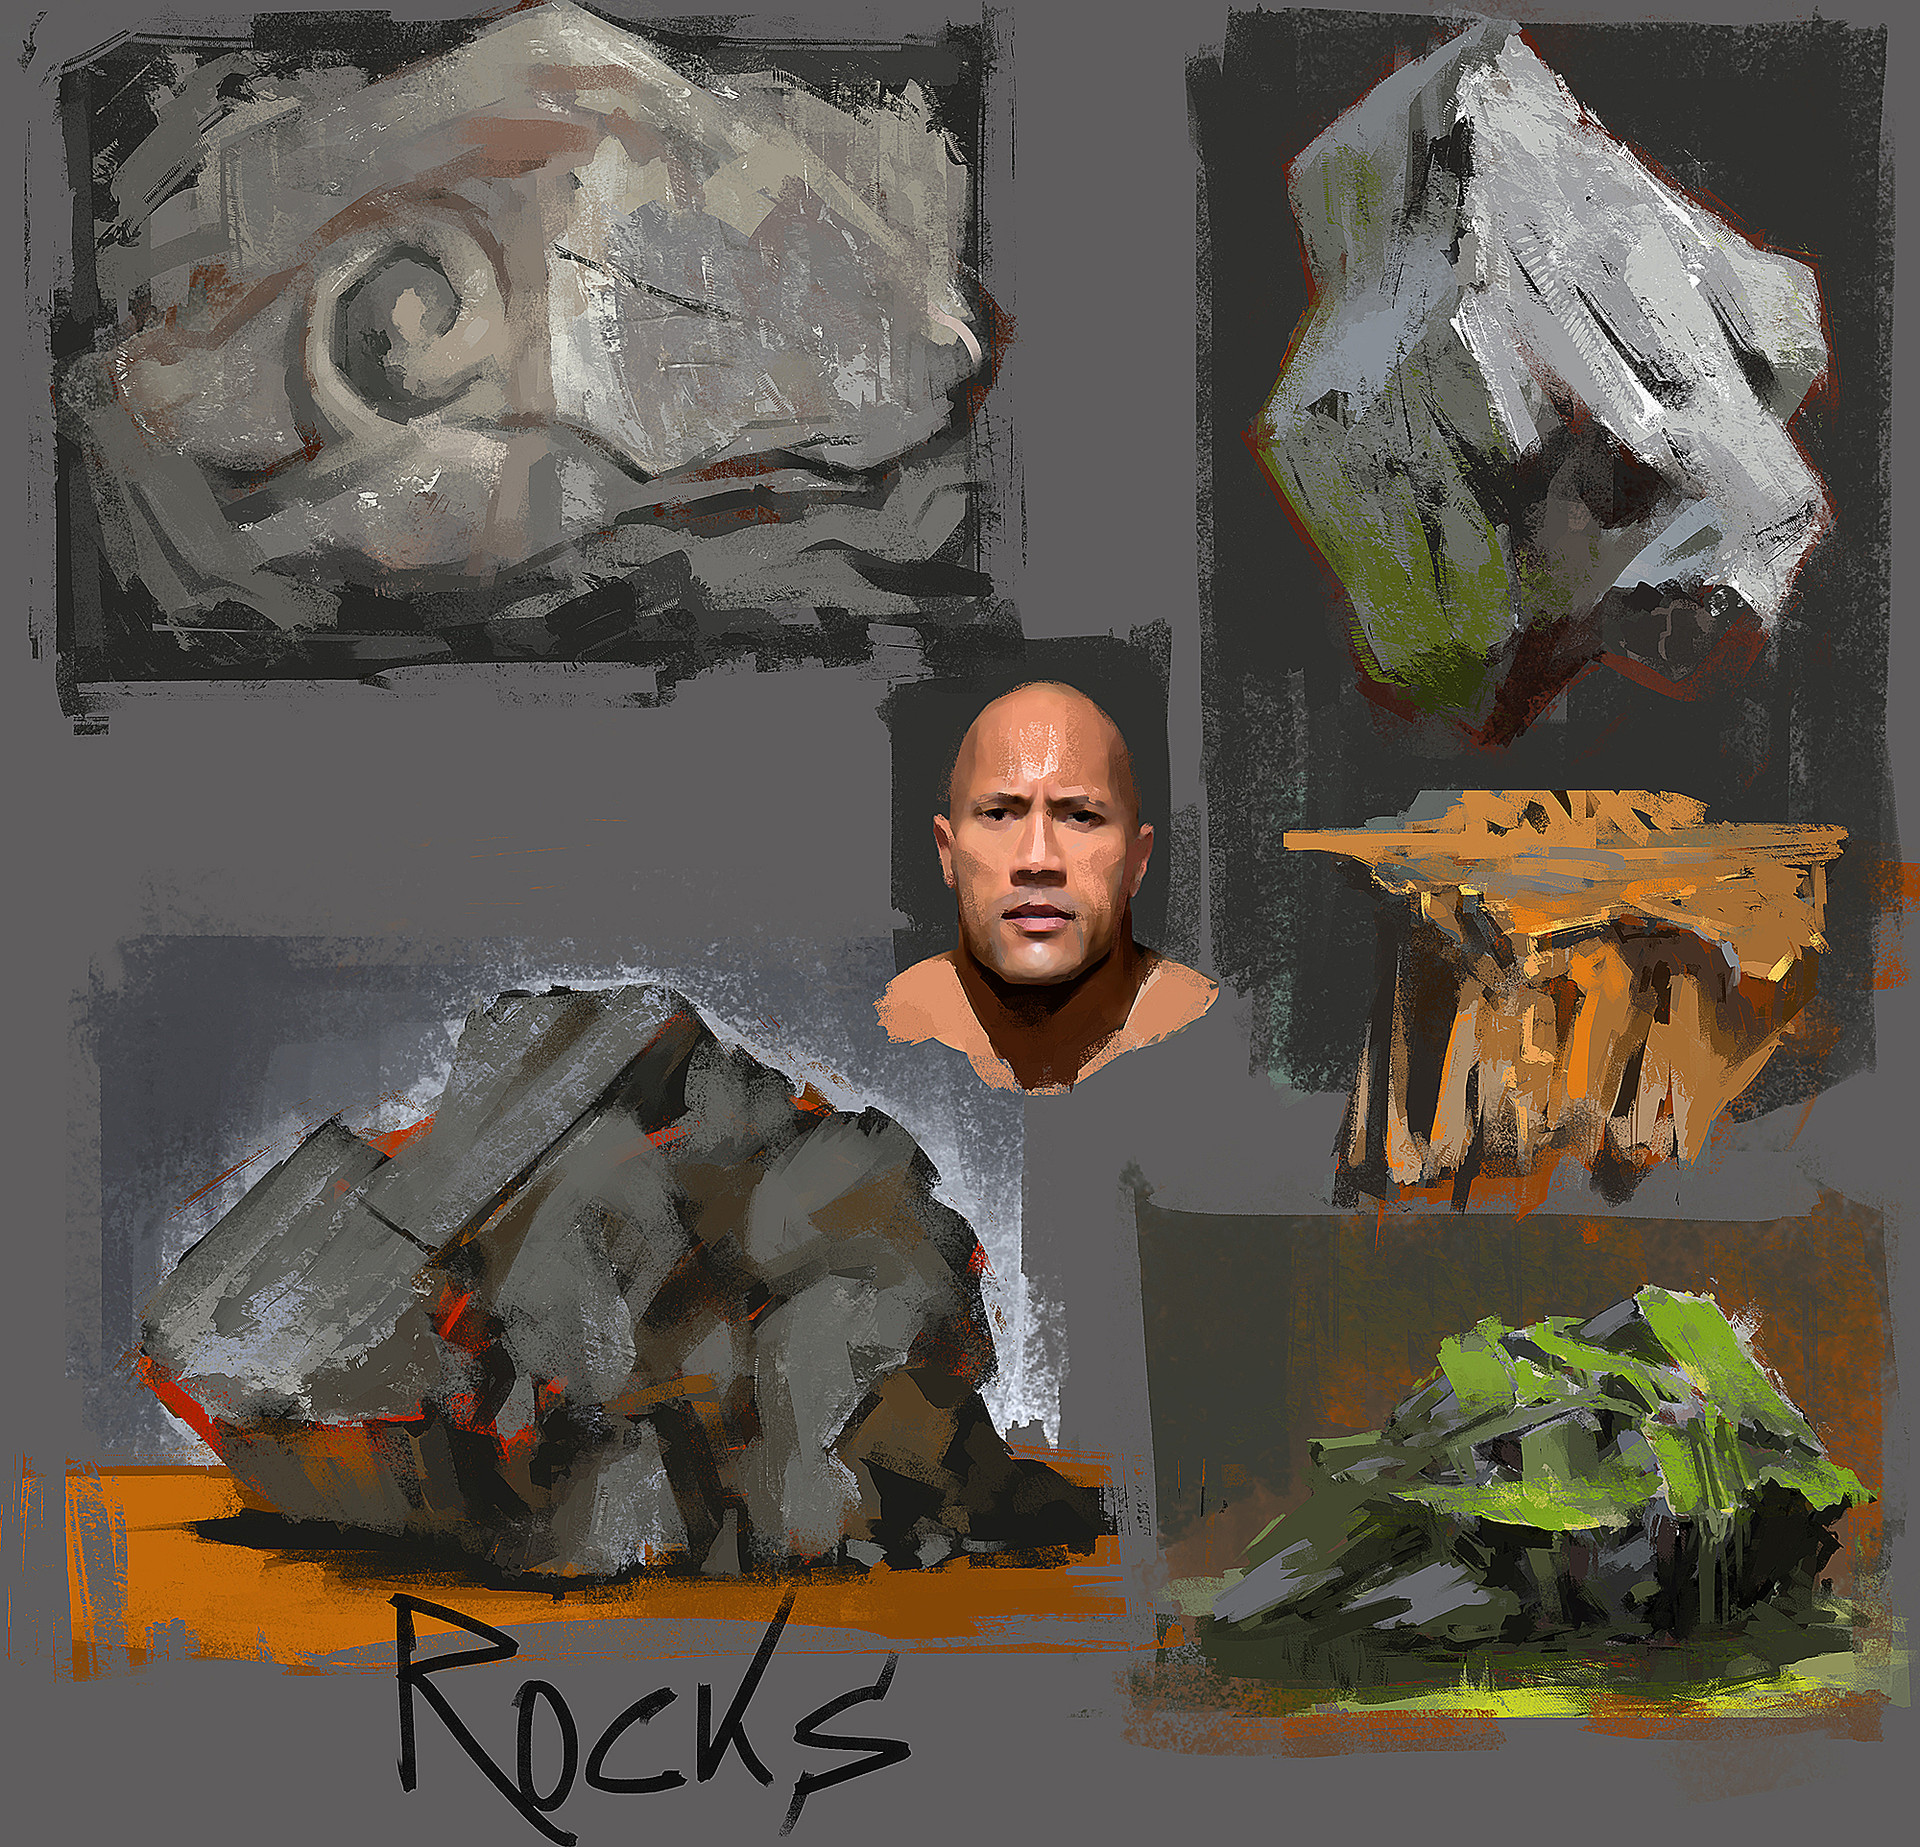 Rock studies